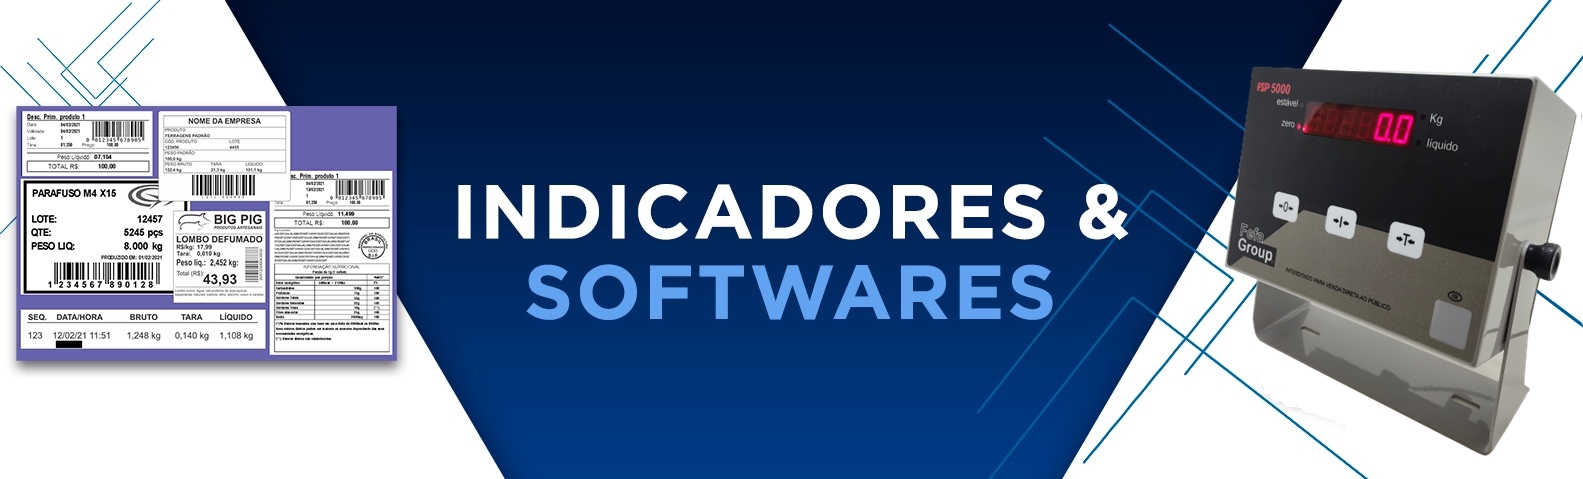 Indicadores-e-Softwares-2 (2)